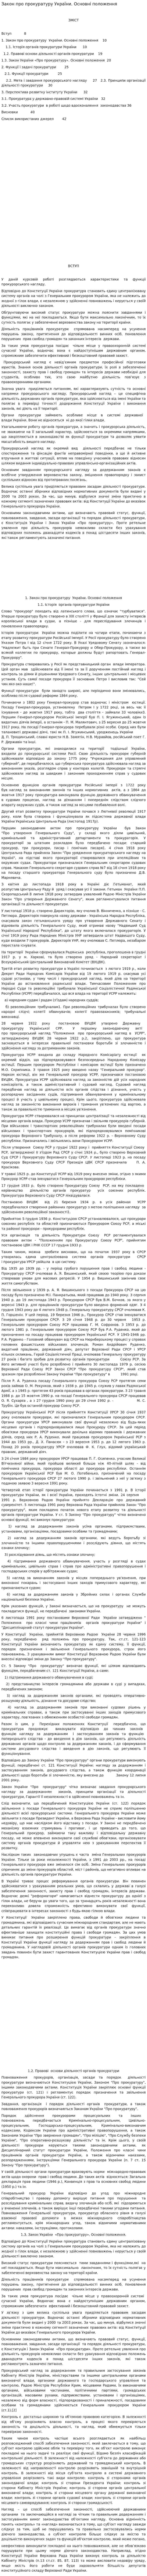 Закон про прокуратуру України. Основні положення